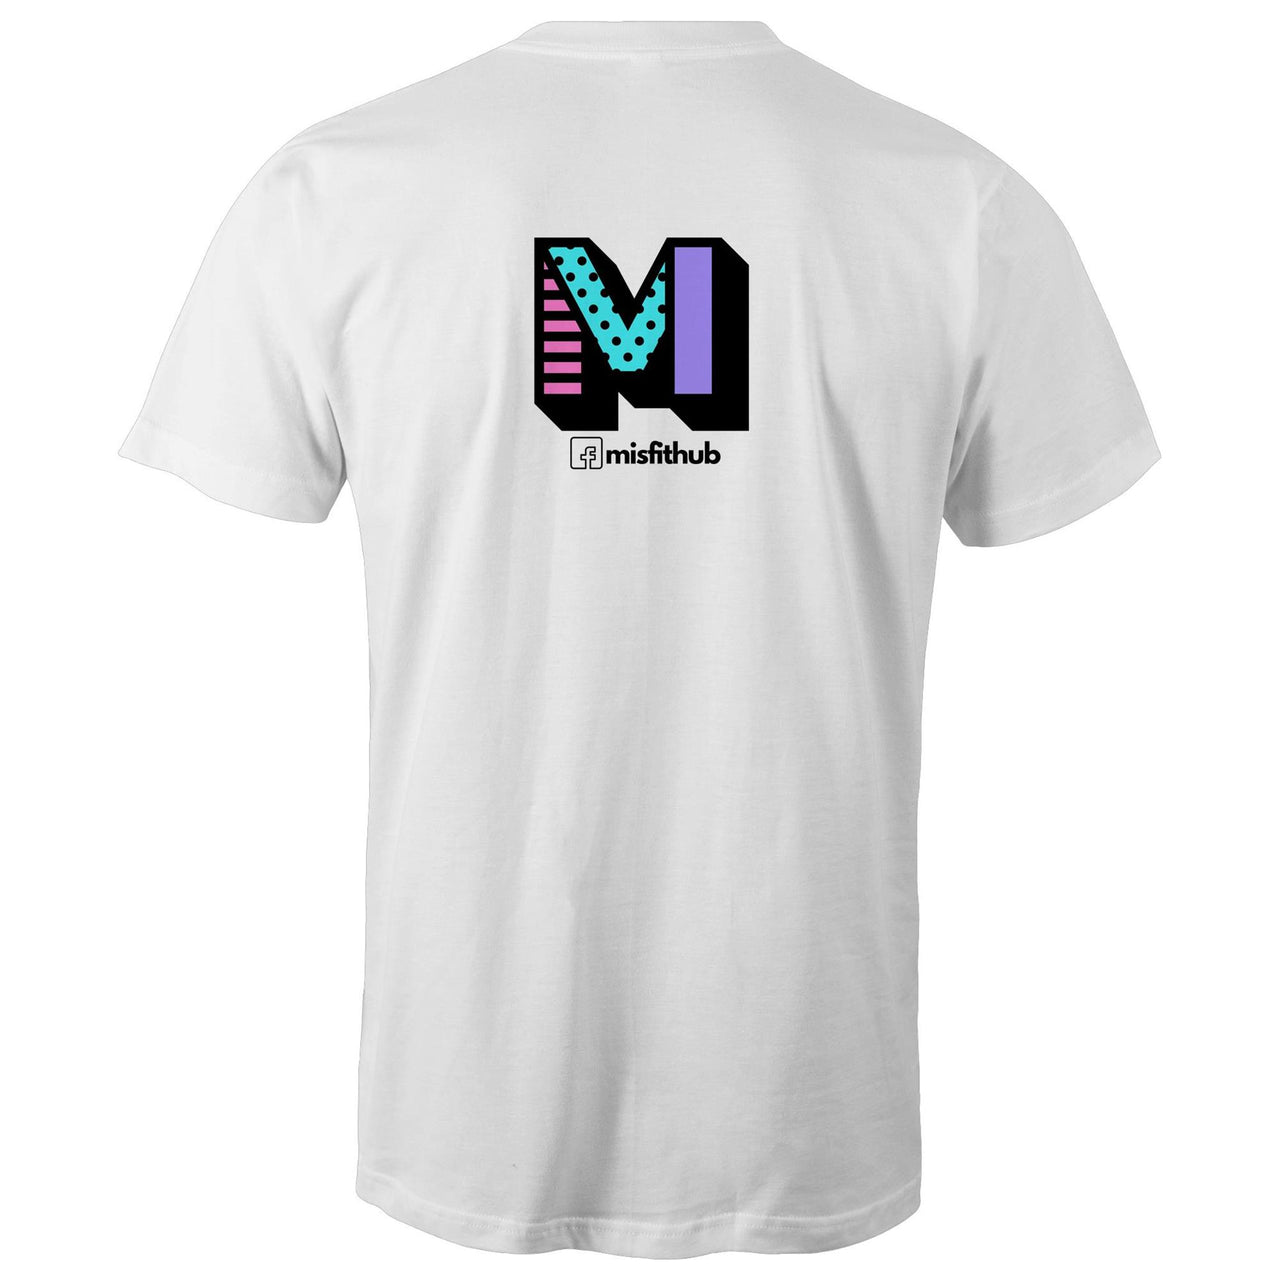 Give Zero F#cks Crew T-Shirt | Misfit Hub